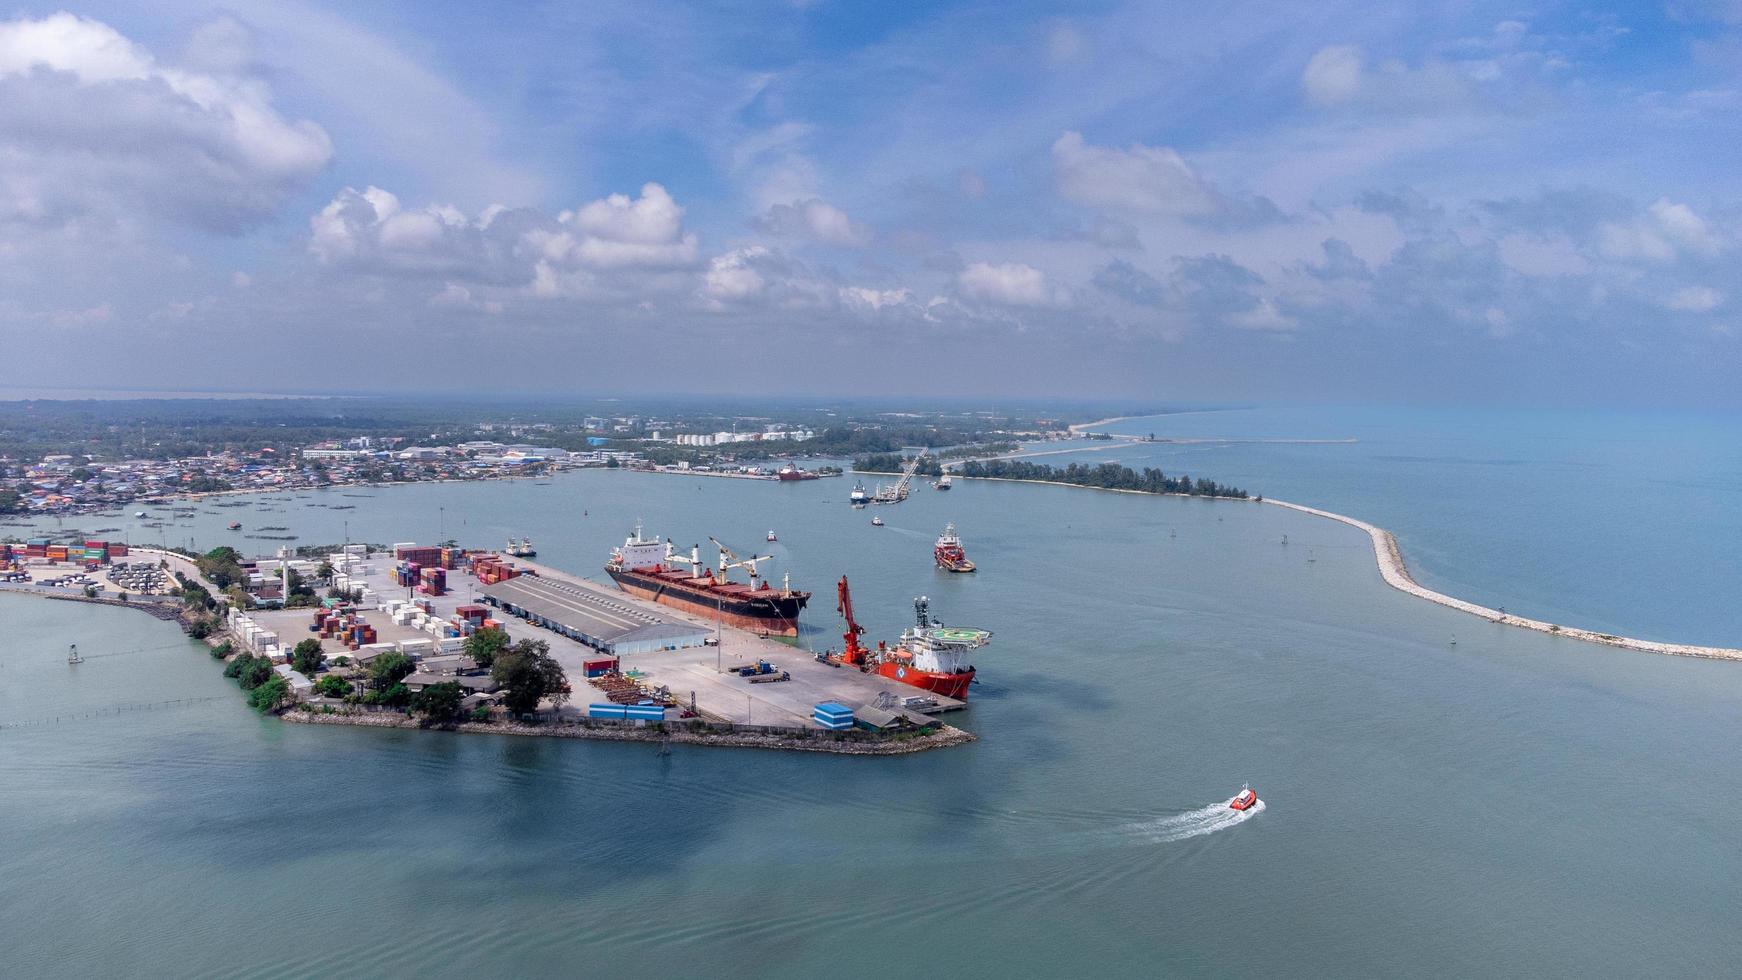 île de songkhla, thaïlande - février 2022 - vue aérienne de l'entreprise de transport maritime industriel et du conteneur de fret. situé sur une péninsule qui sépare l'estuaire. photo